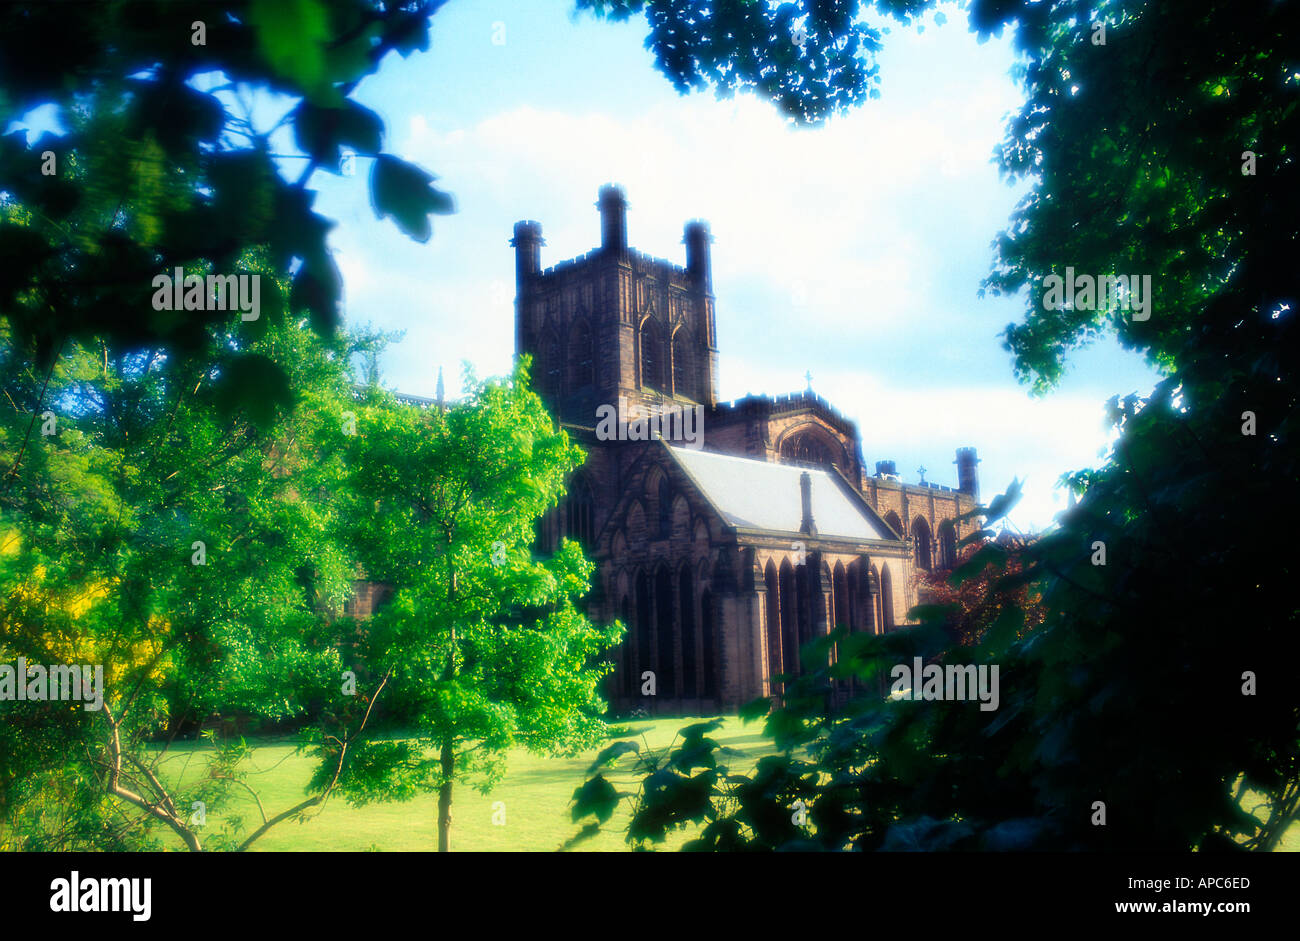 La cathédrale de la ville de Chester cheshire été arbres encadrées england uk Banque D'Images